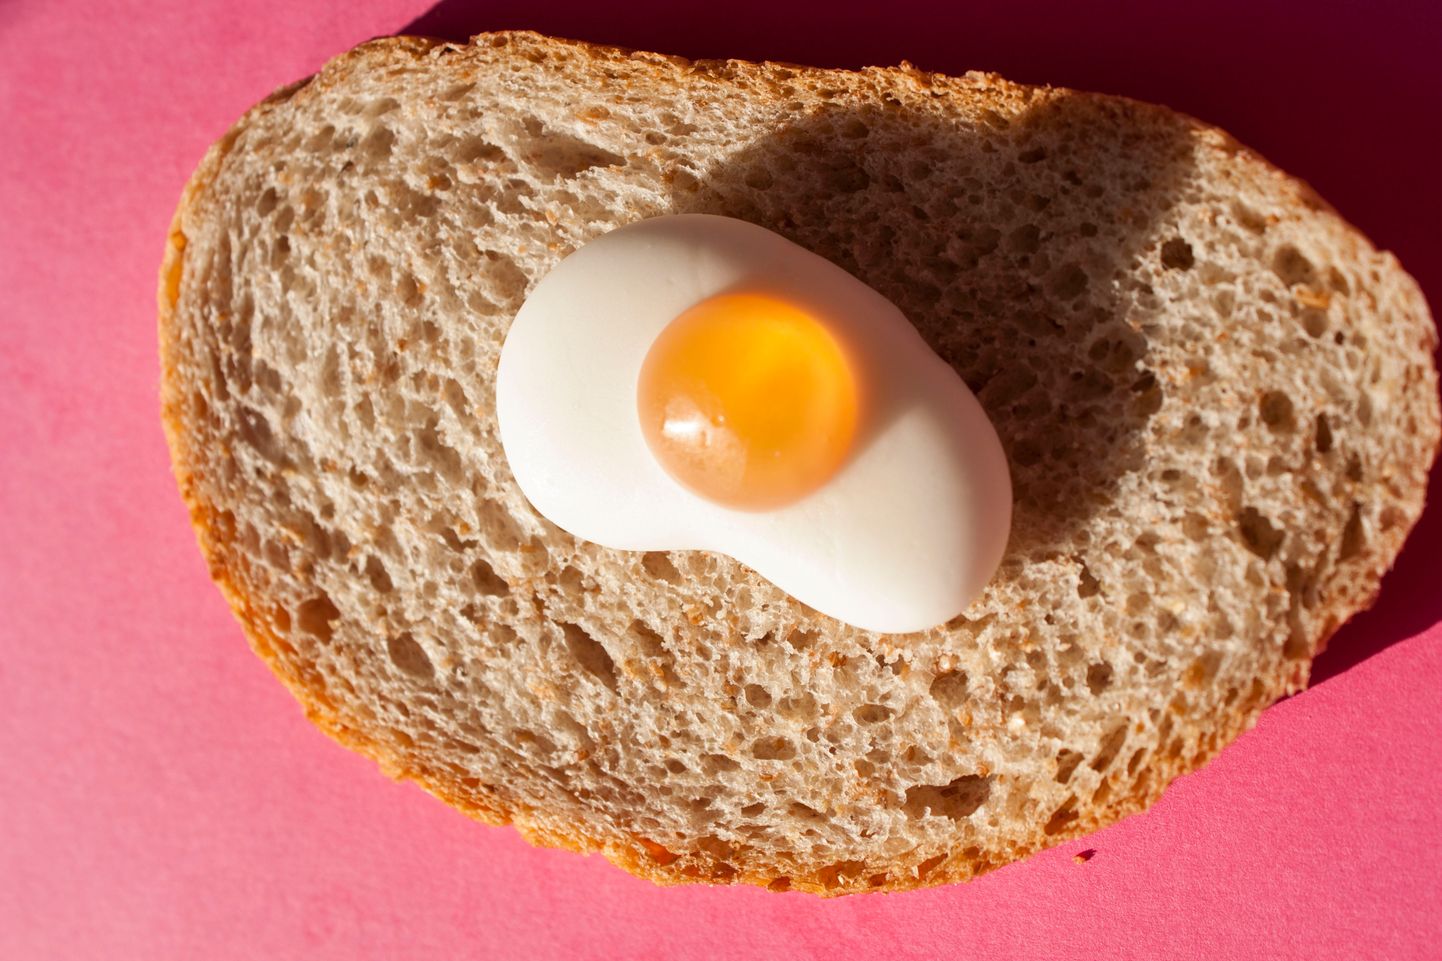 Яйцо и хлеб. Иллюстративное фото